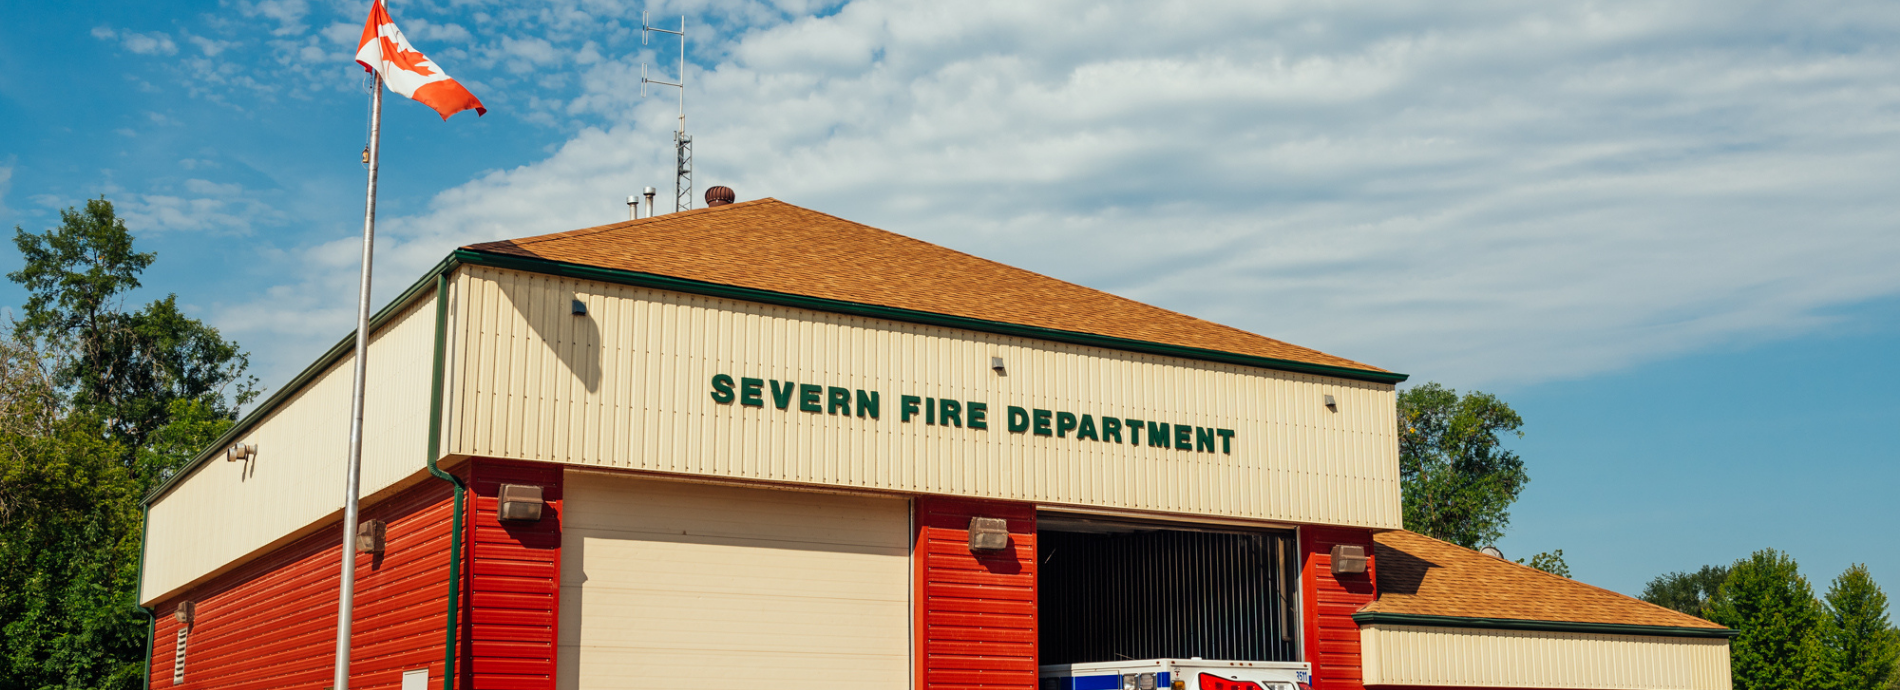 Severn Fire Department